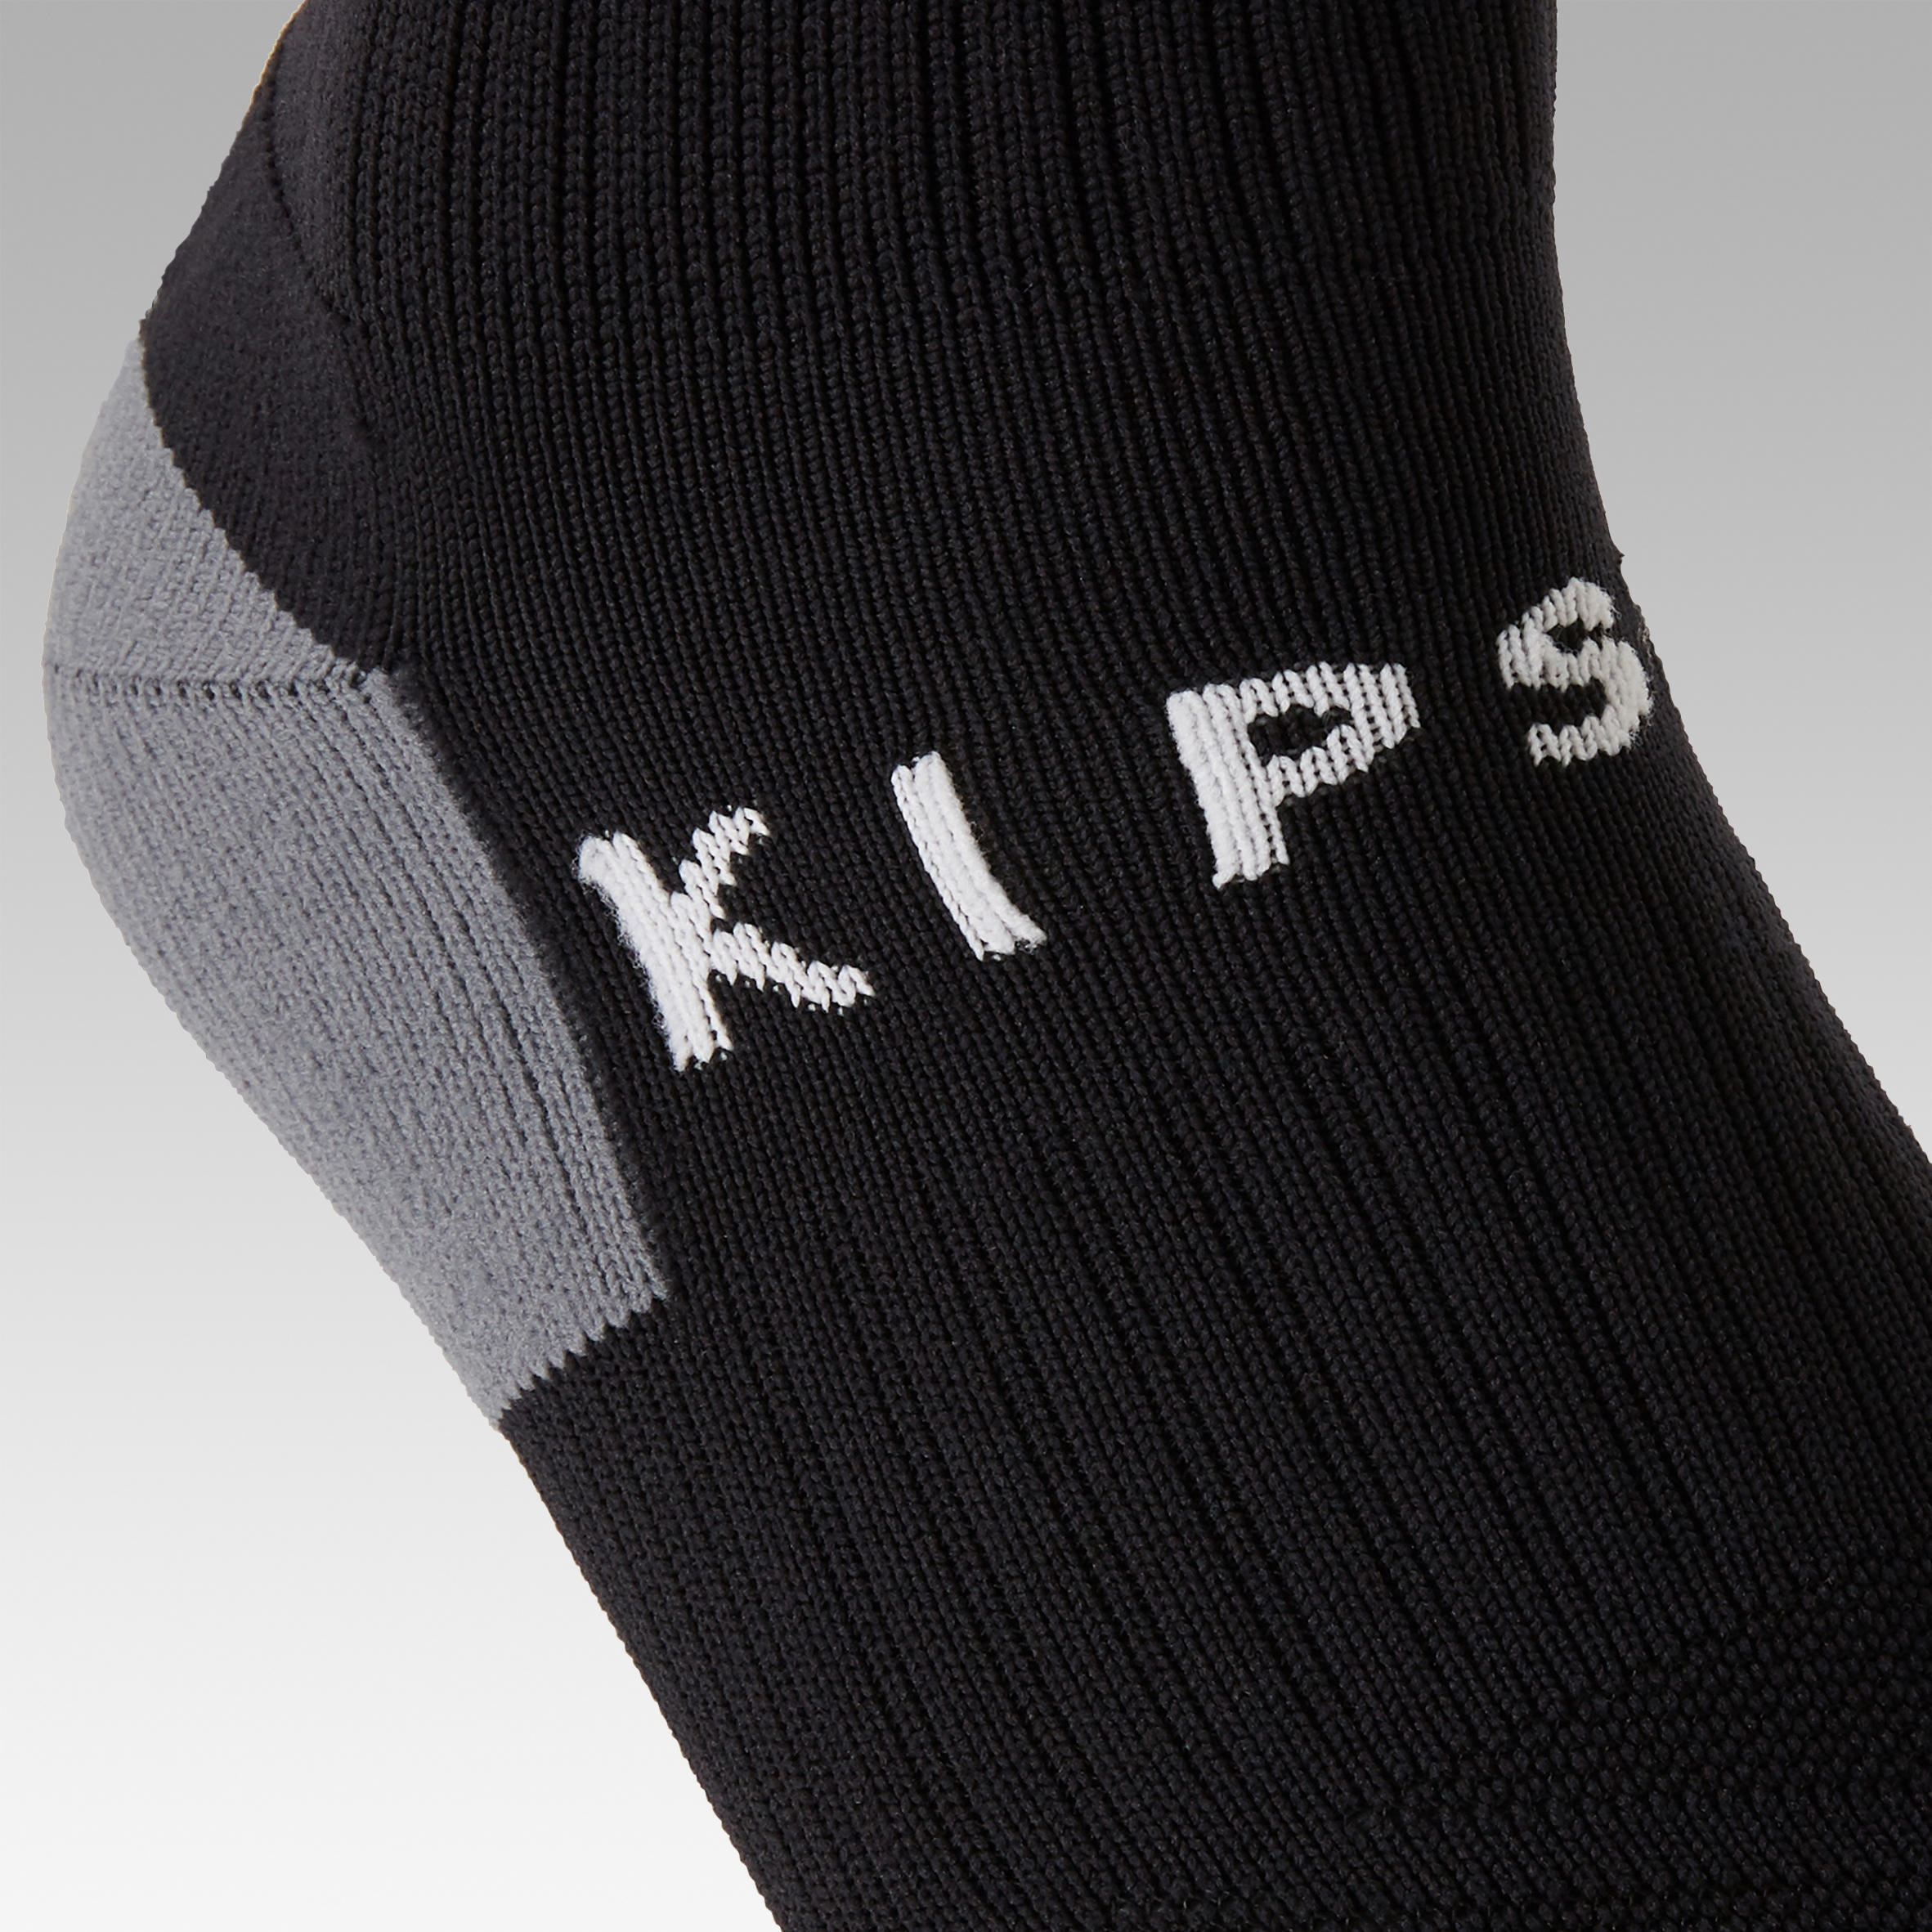 Kids' breathable football socks, black 4/7